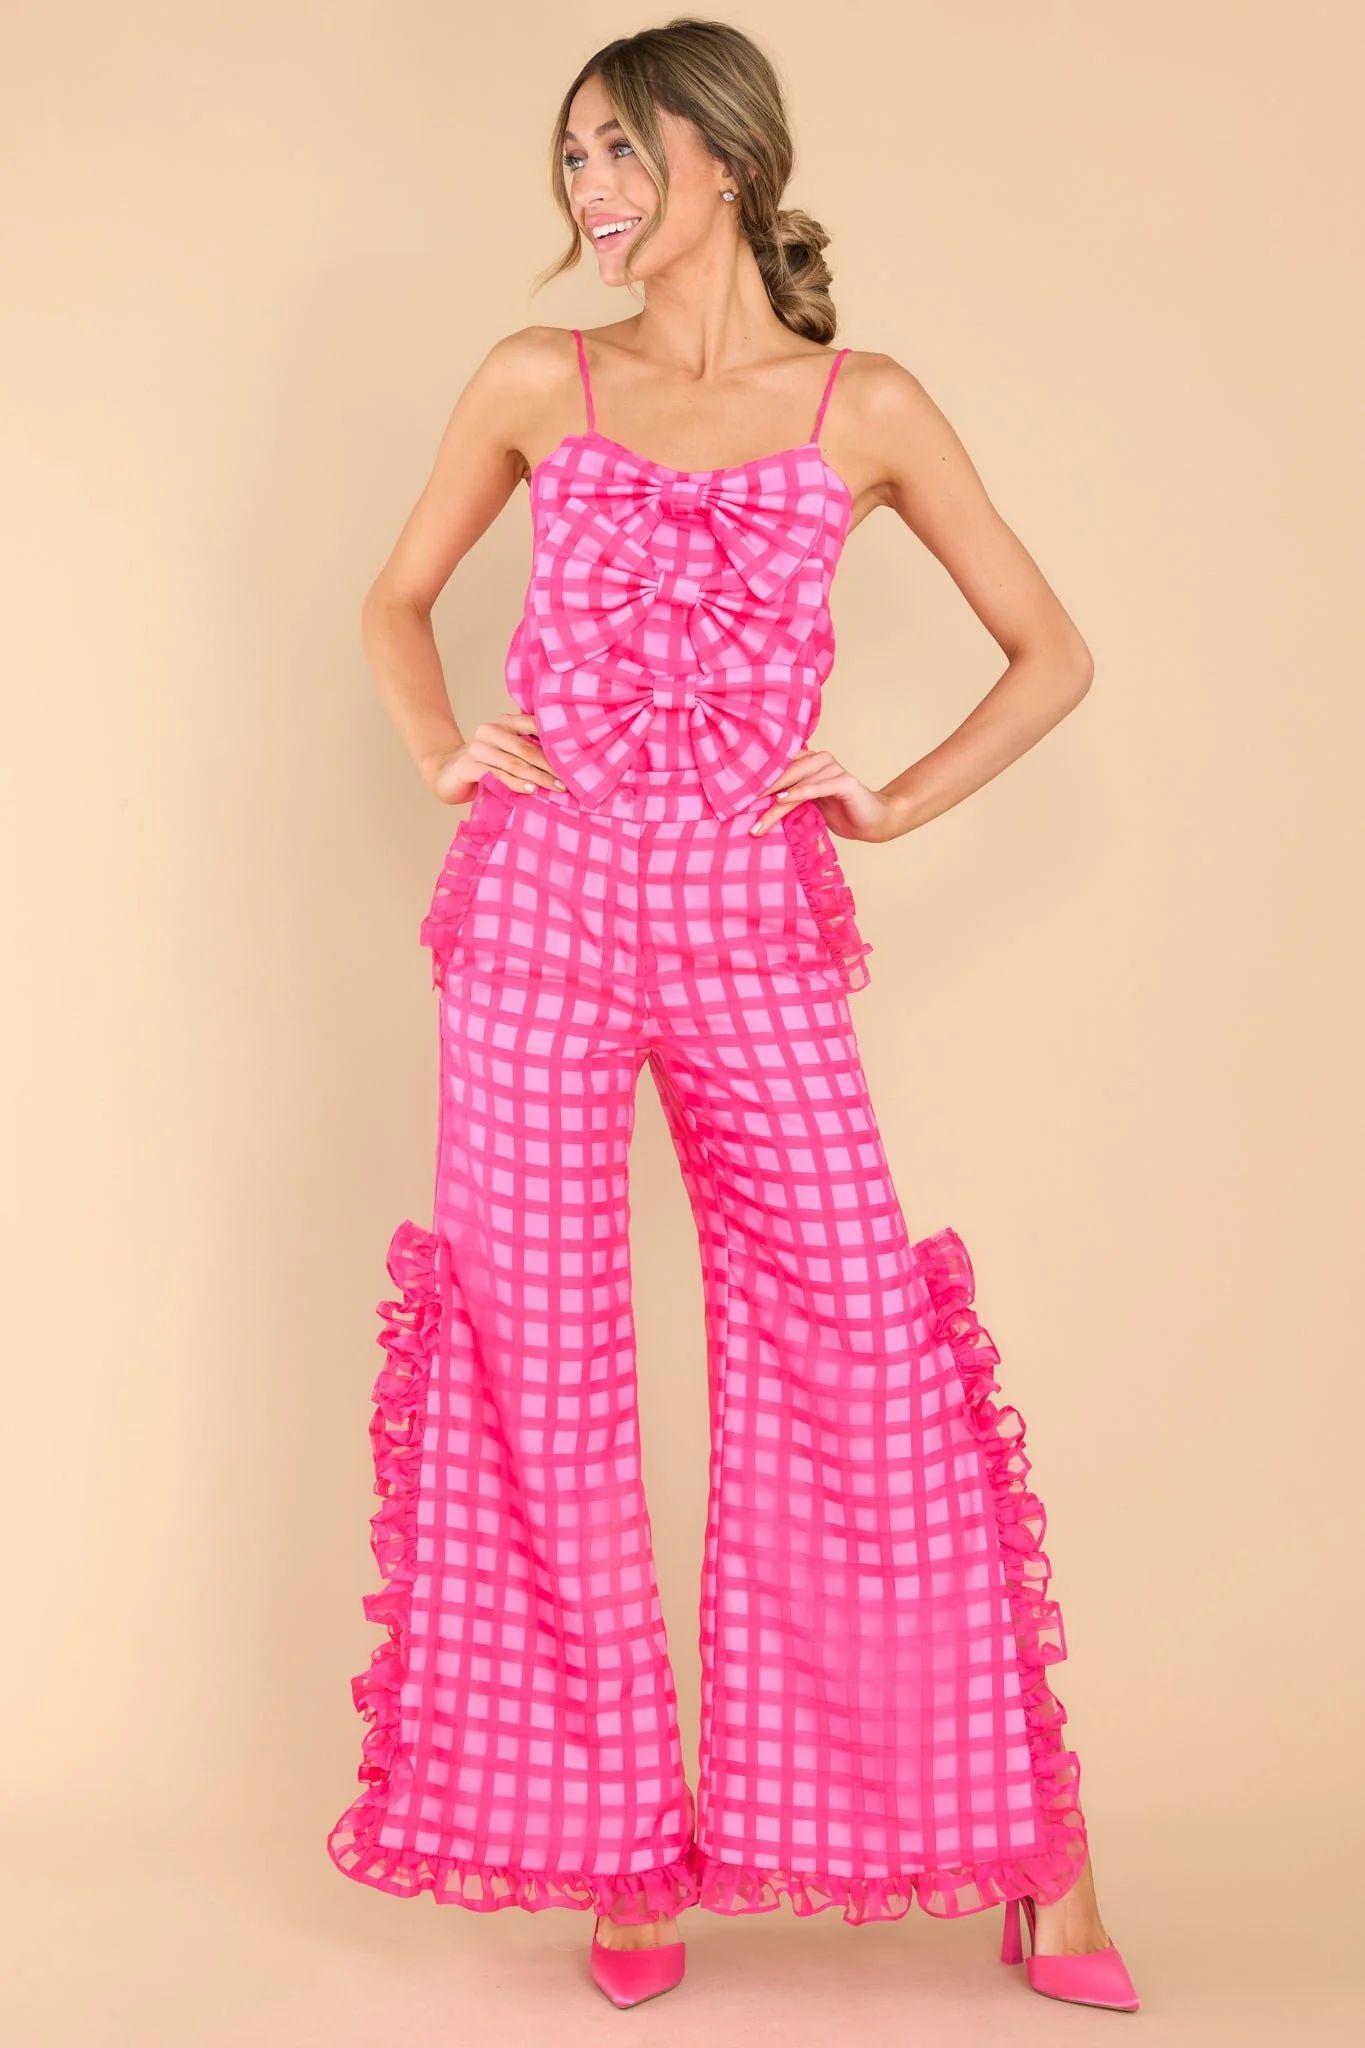 Barbara Bow Hot Pink Cami | Red Dress 